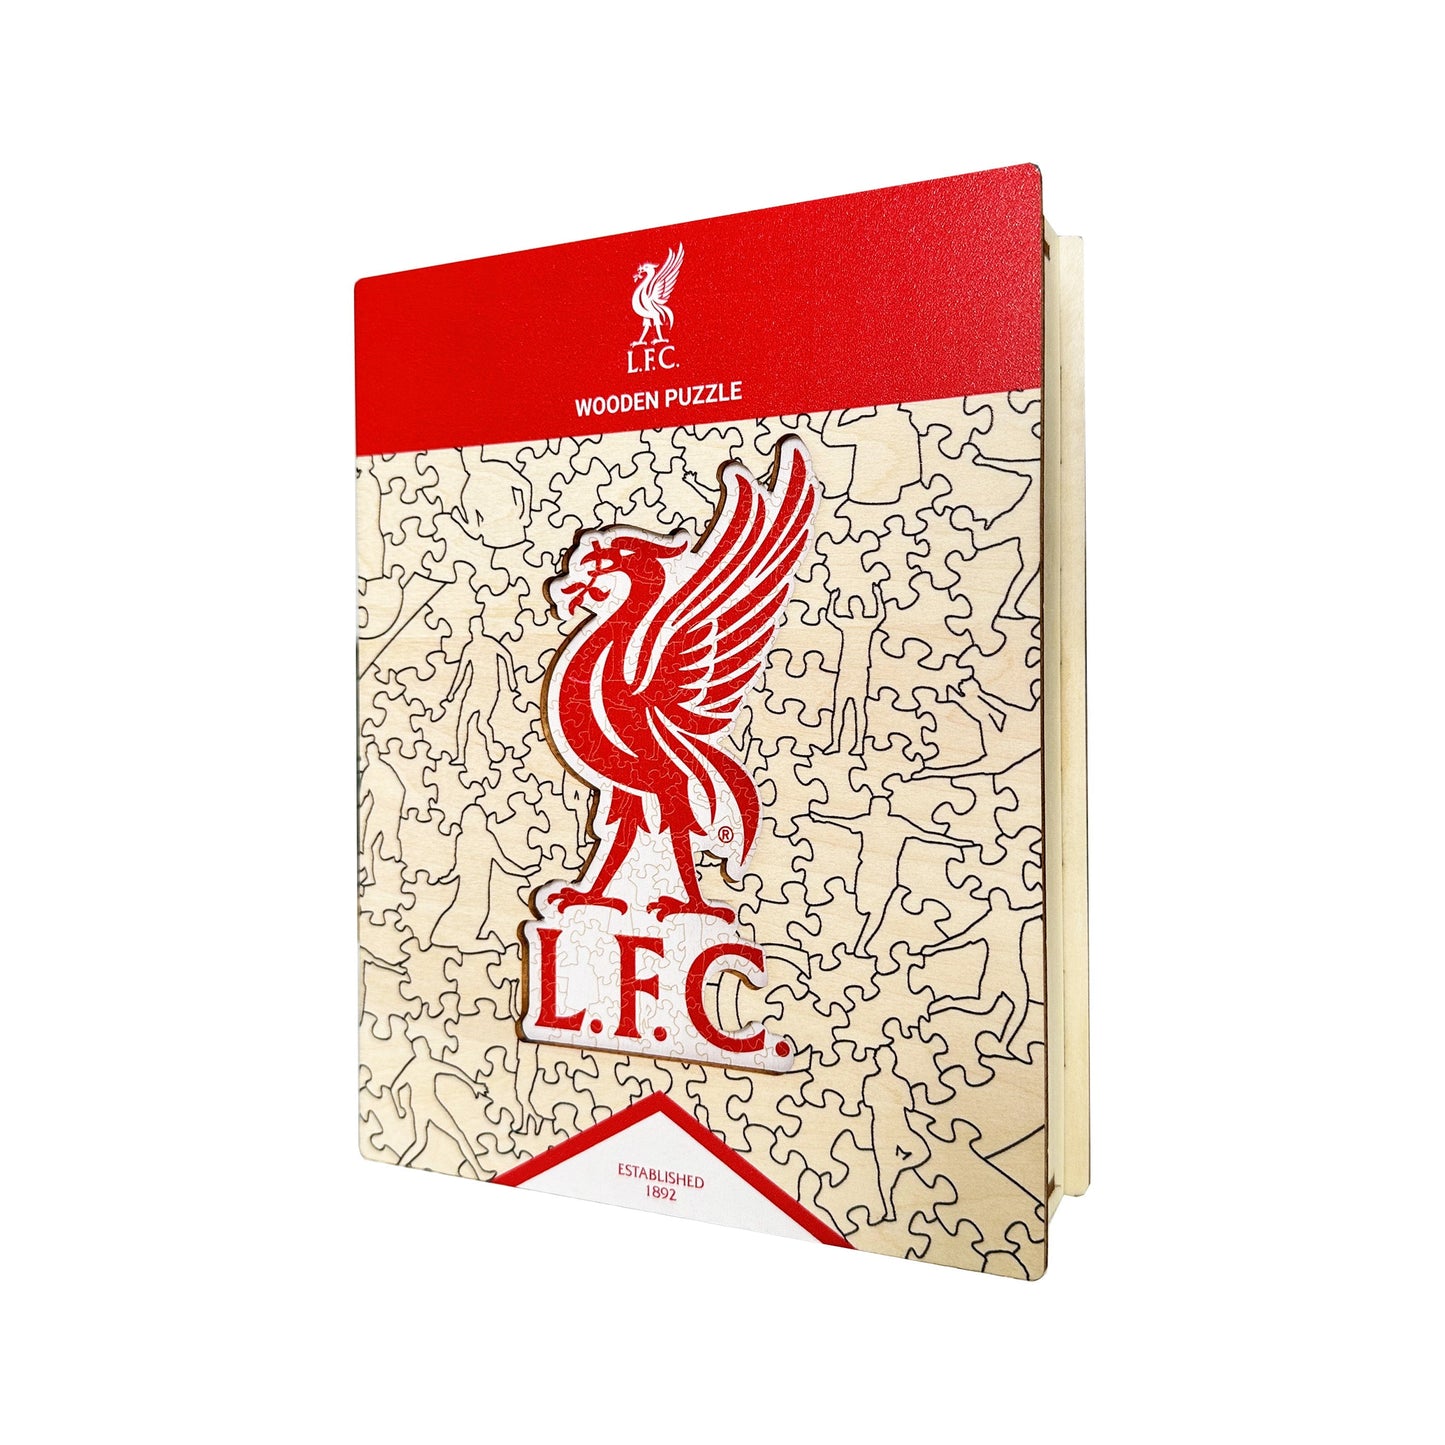 2 PACK Liverpool FC® Liver Bird Logo + Salah